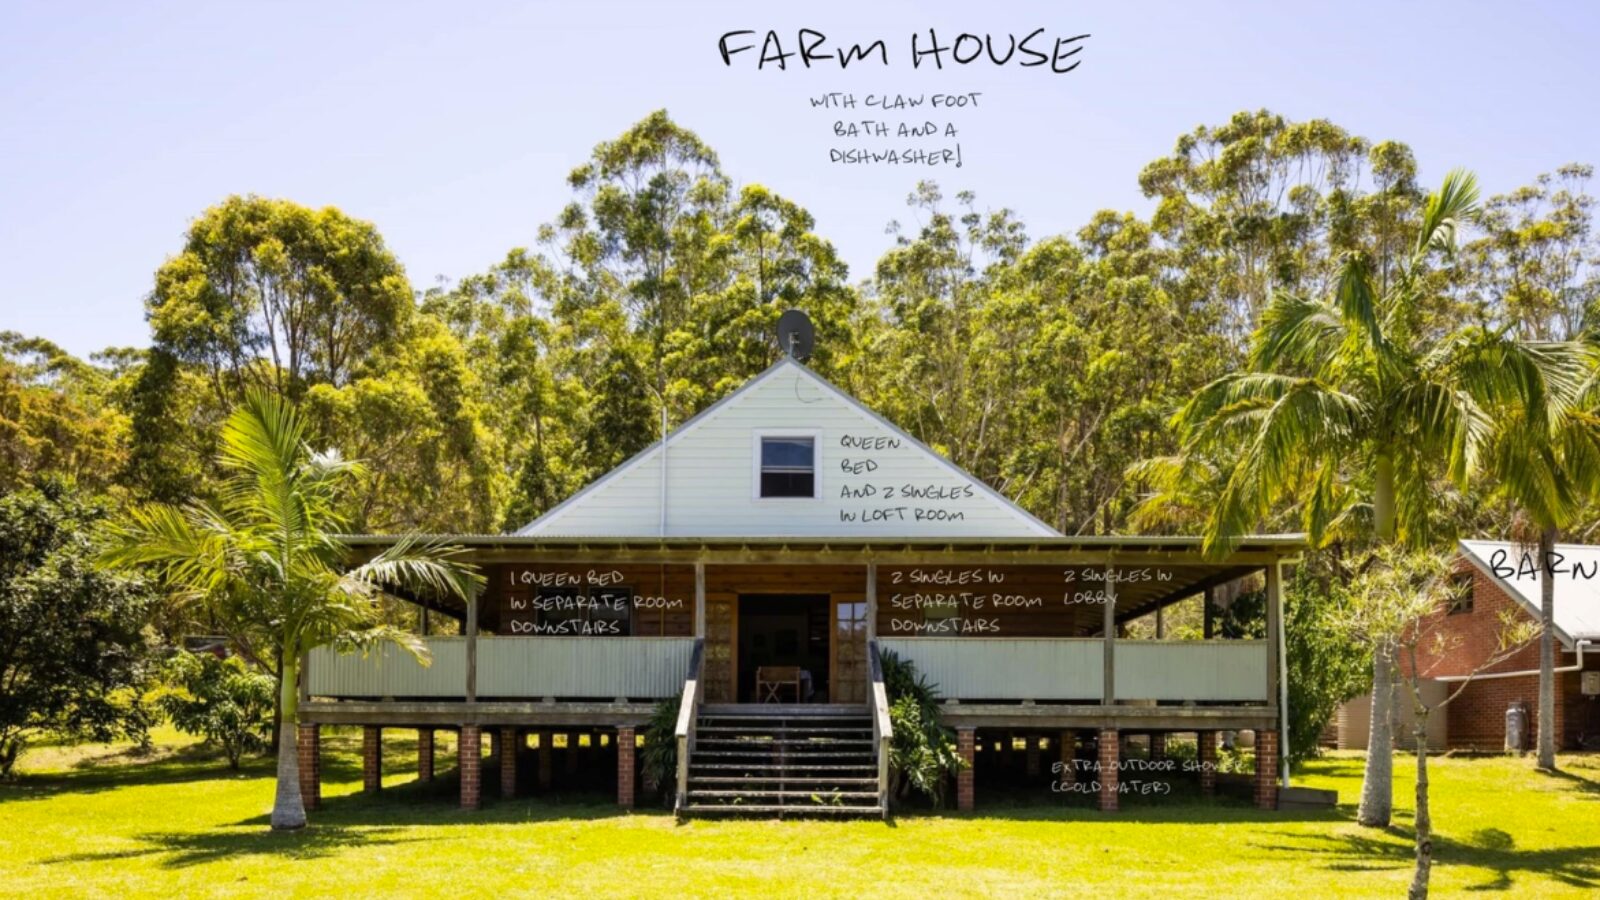 The Mainstay Farm house